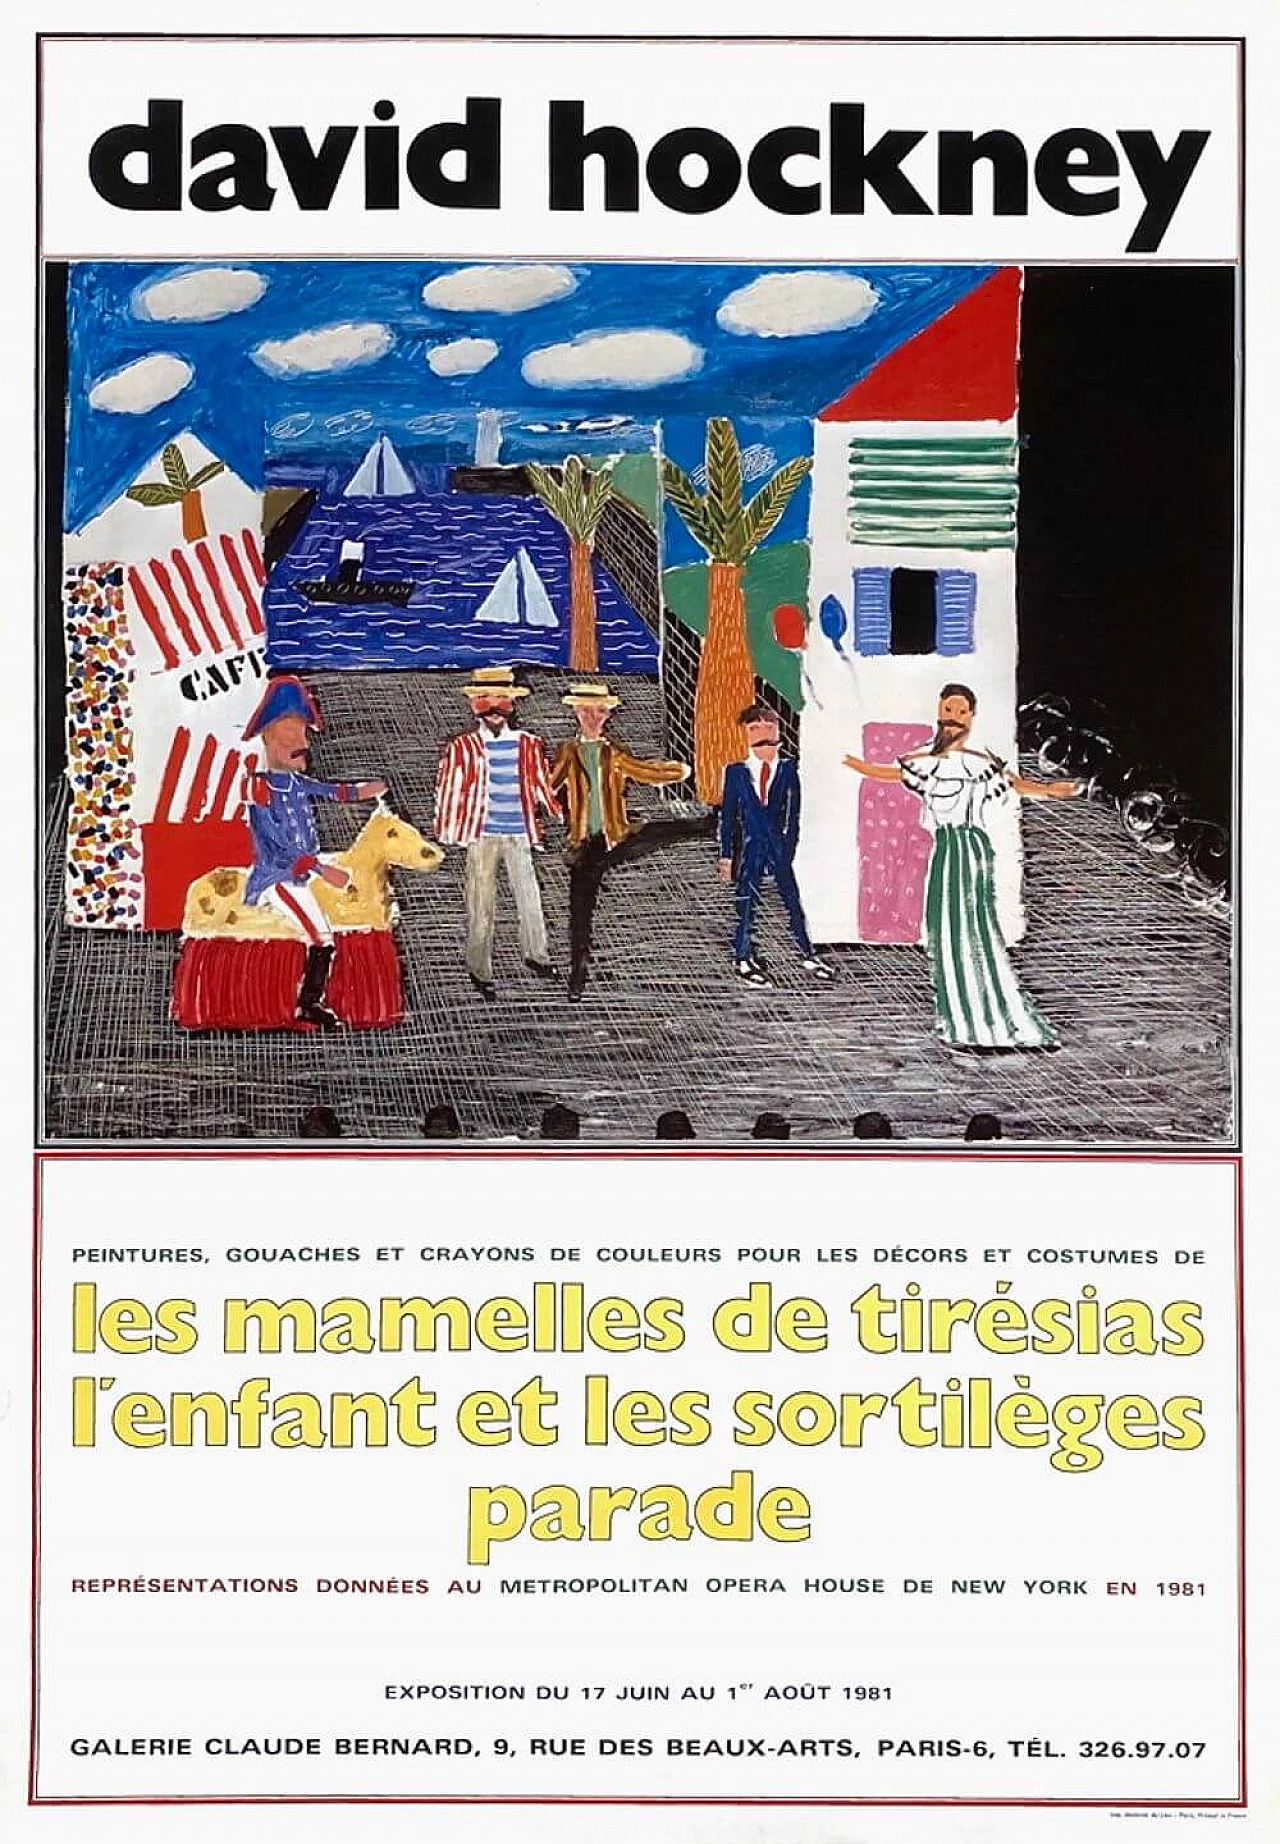 David Hockney Exhibition Poster, 1981 1219448